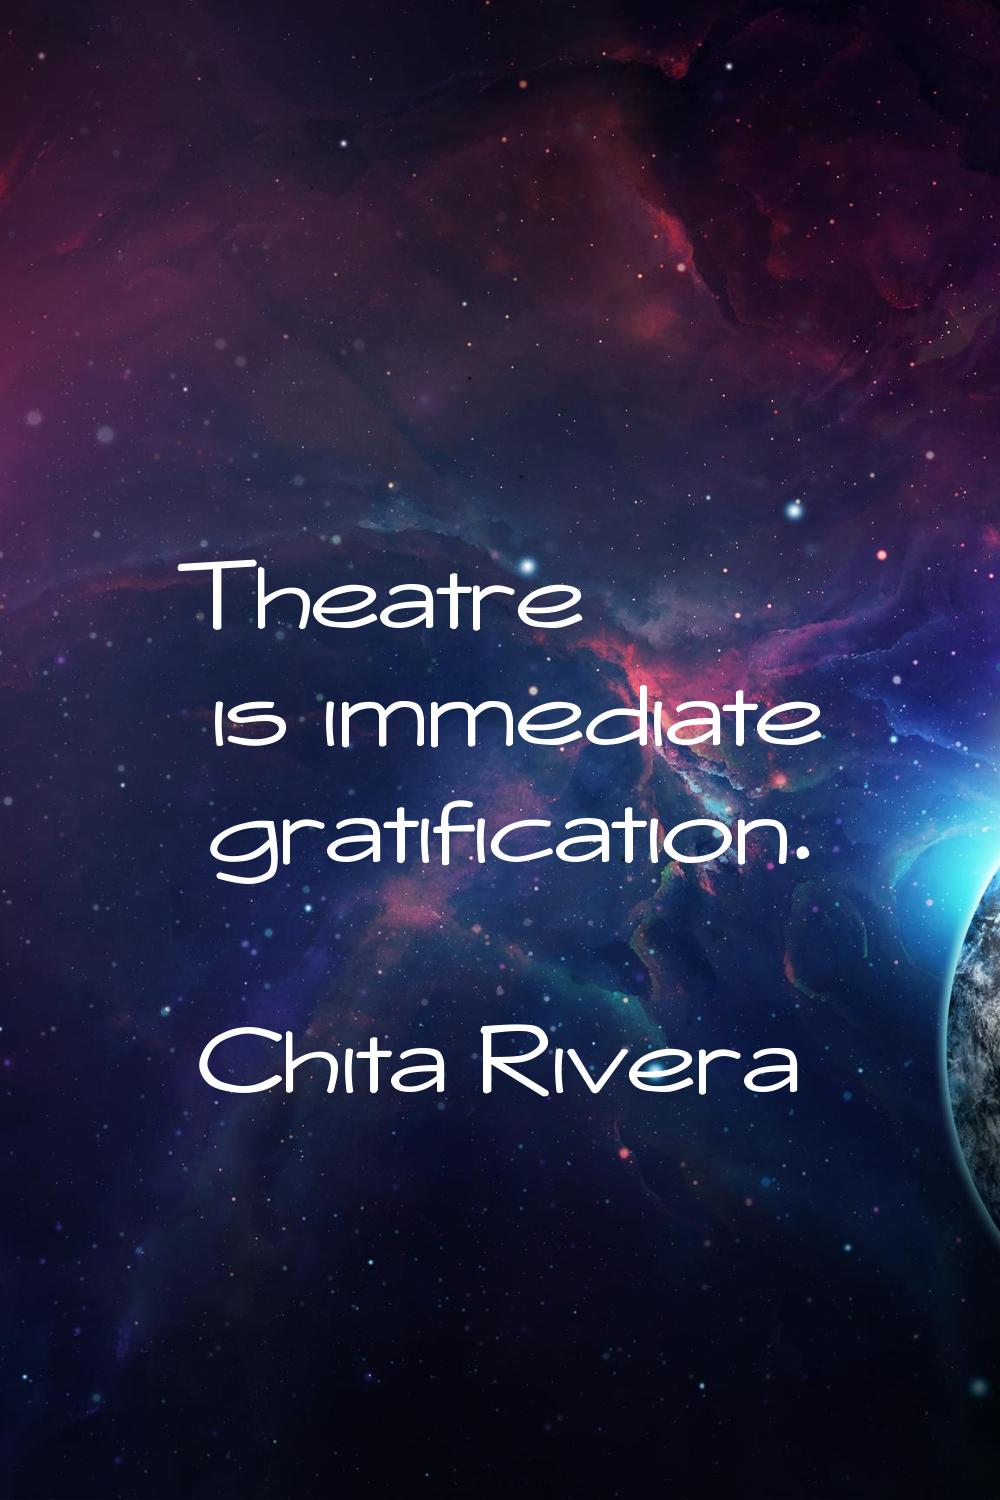 Theatre is immediate gratification.